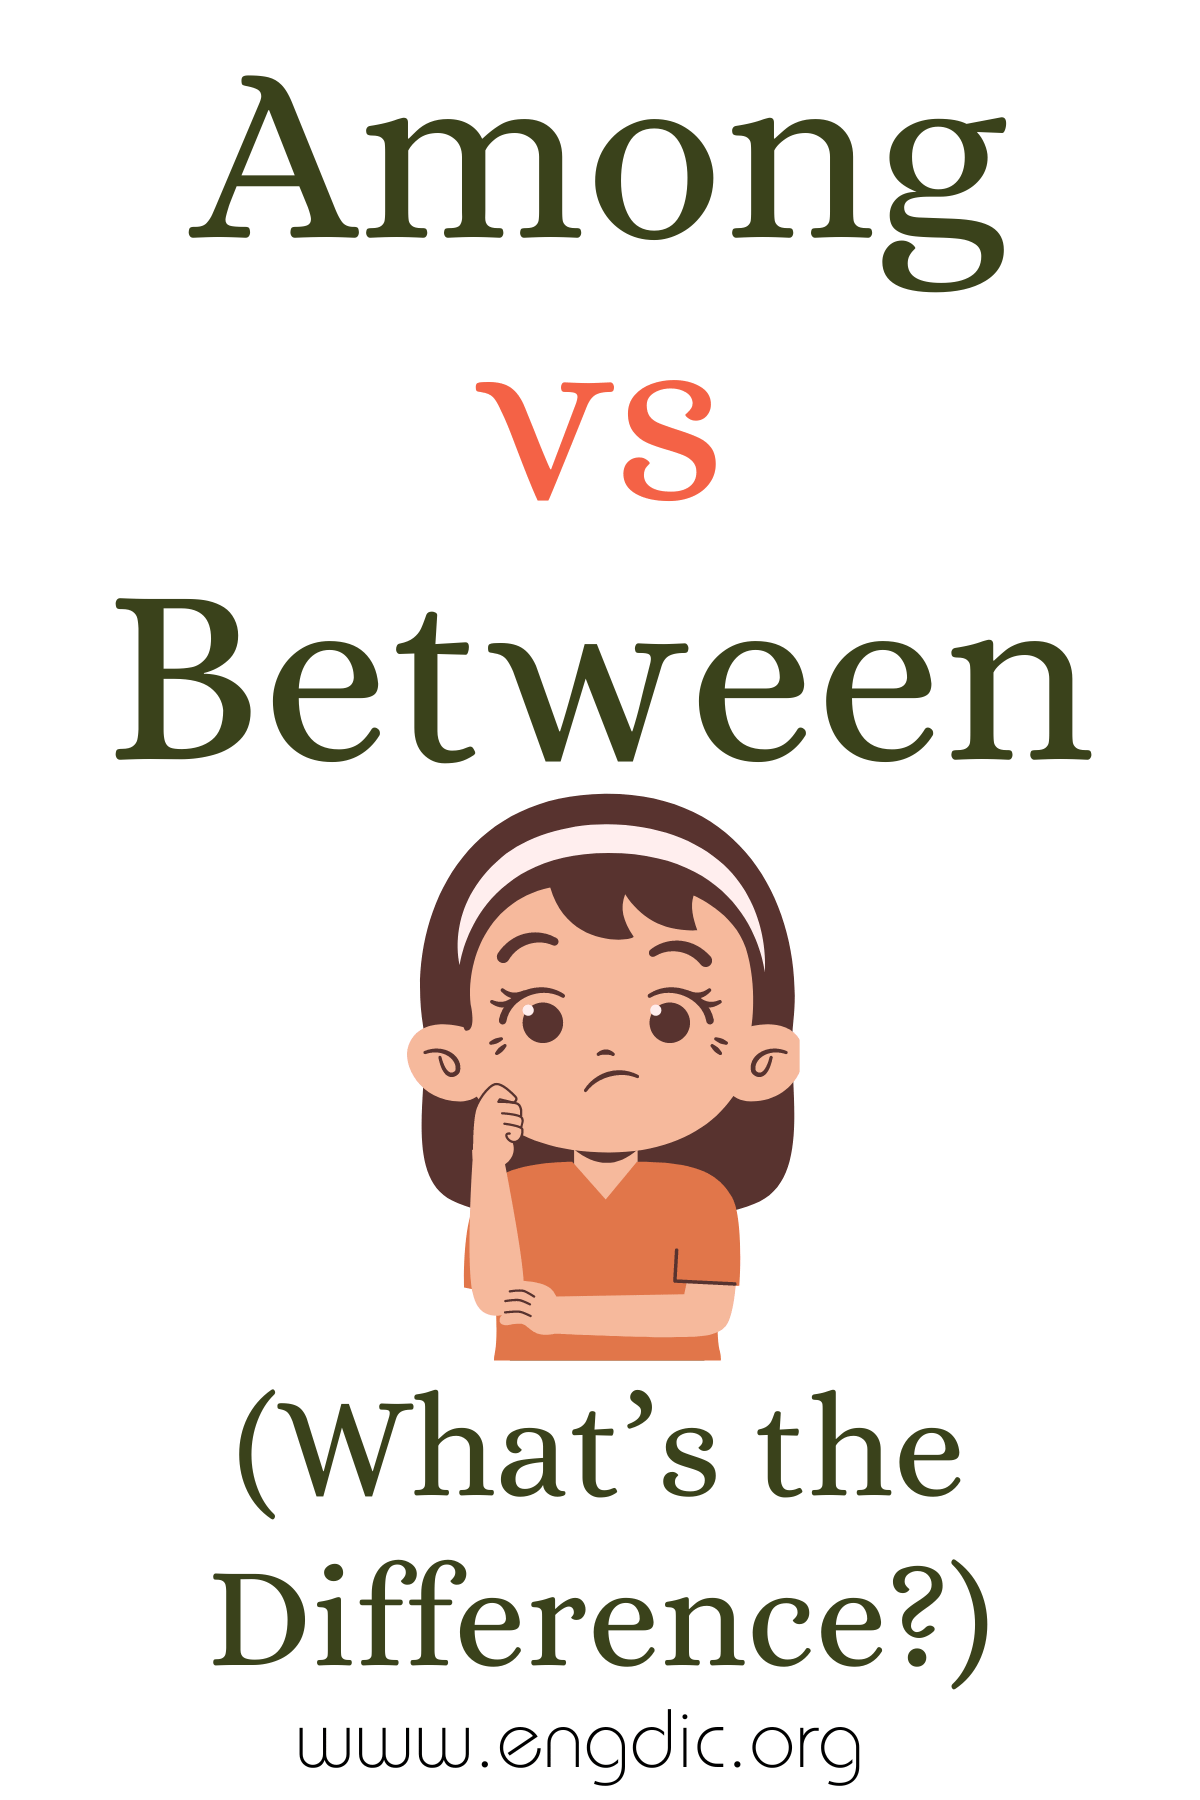 Among vs Between